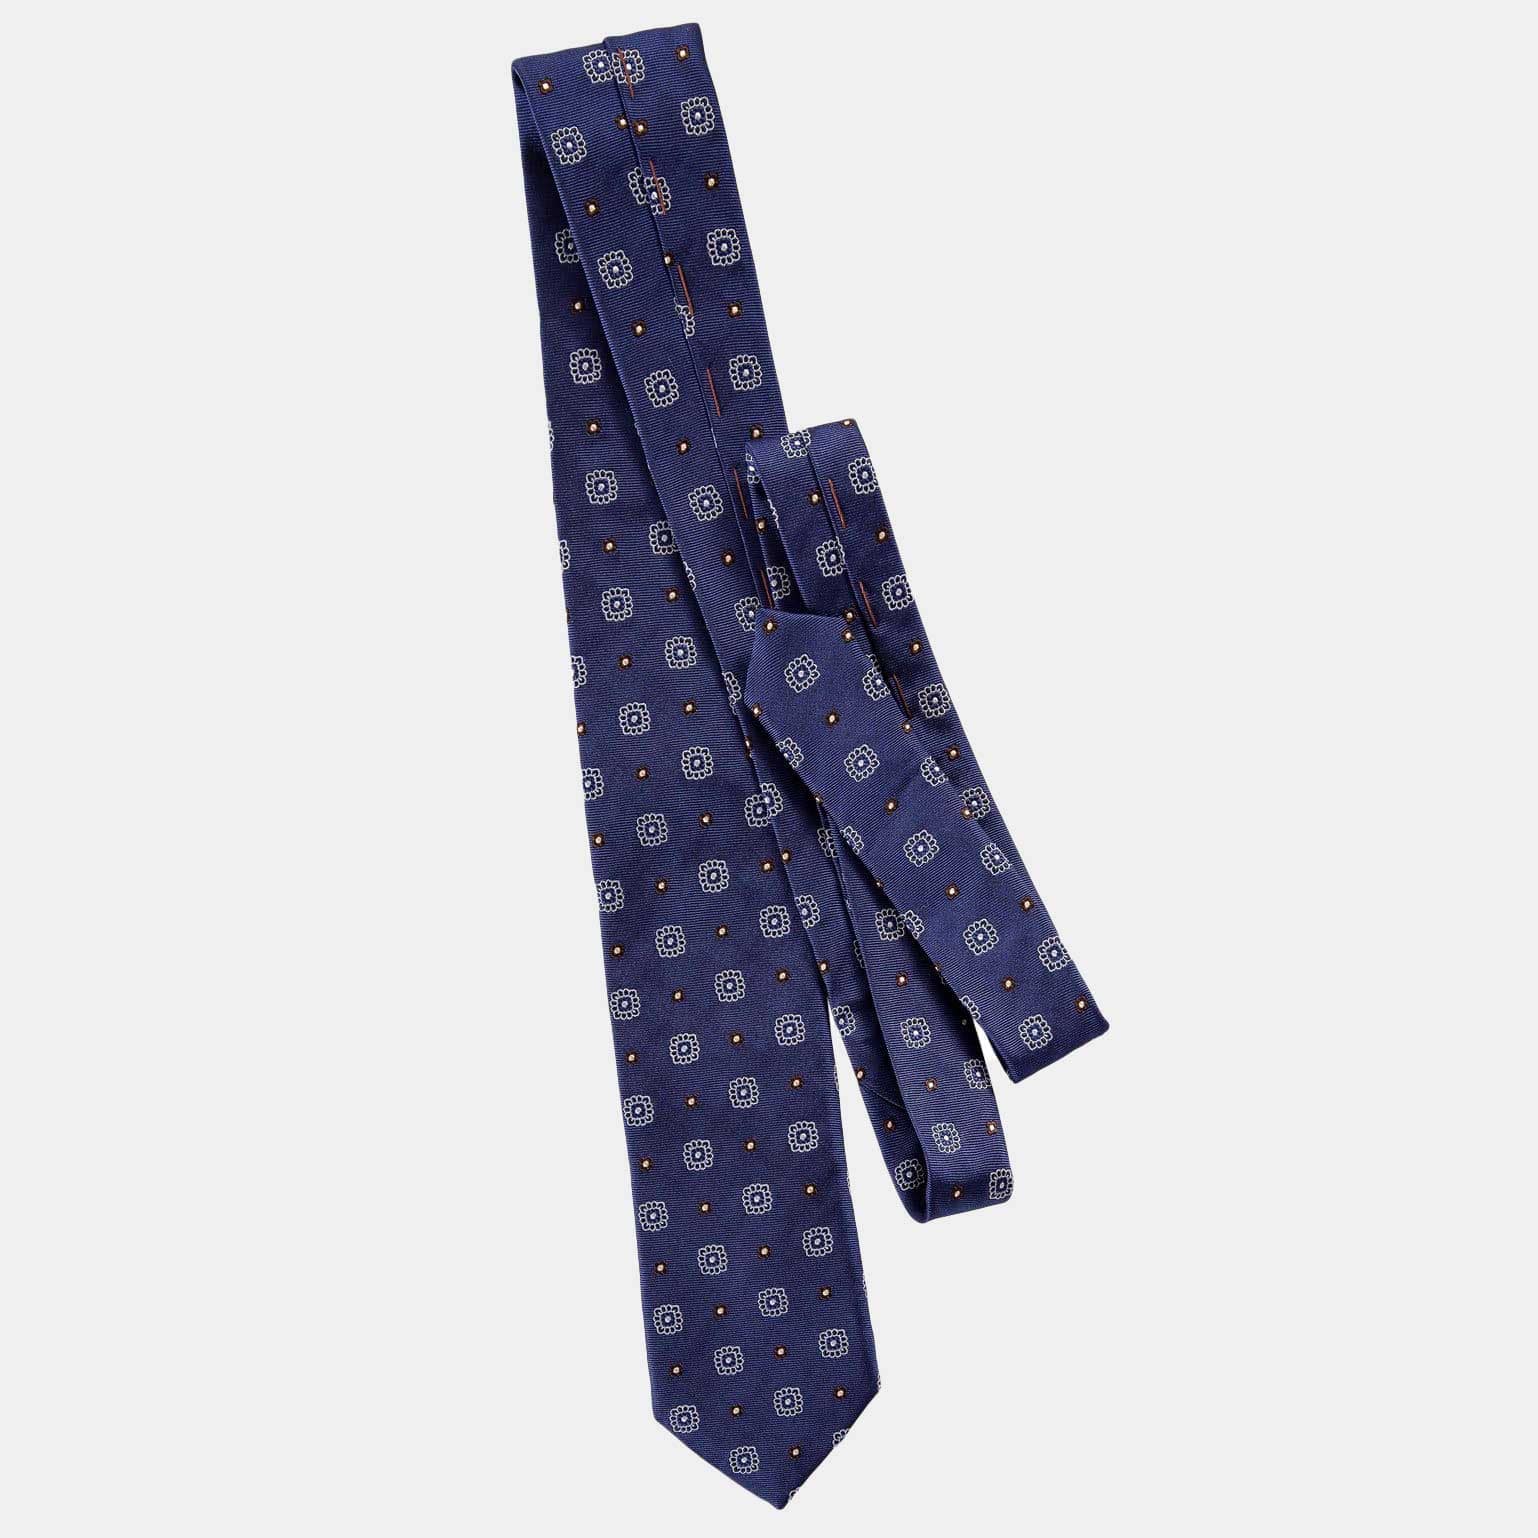 Elizabetta Blue Mogador Silk Tie - 100% Made in Como Italy